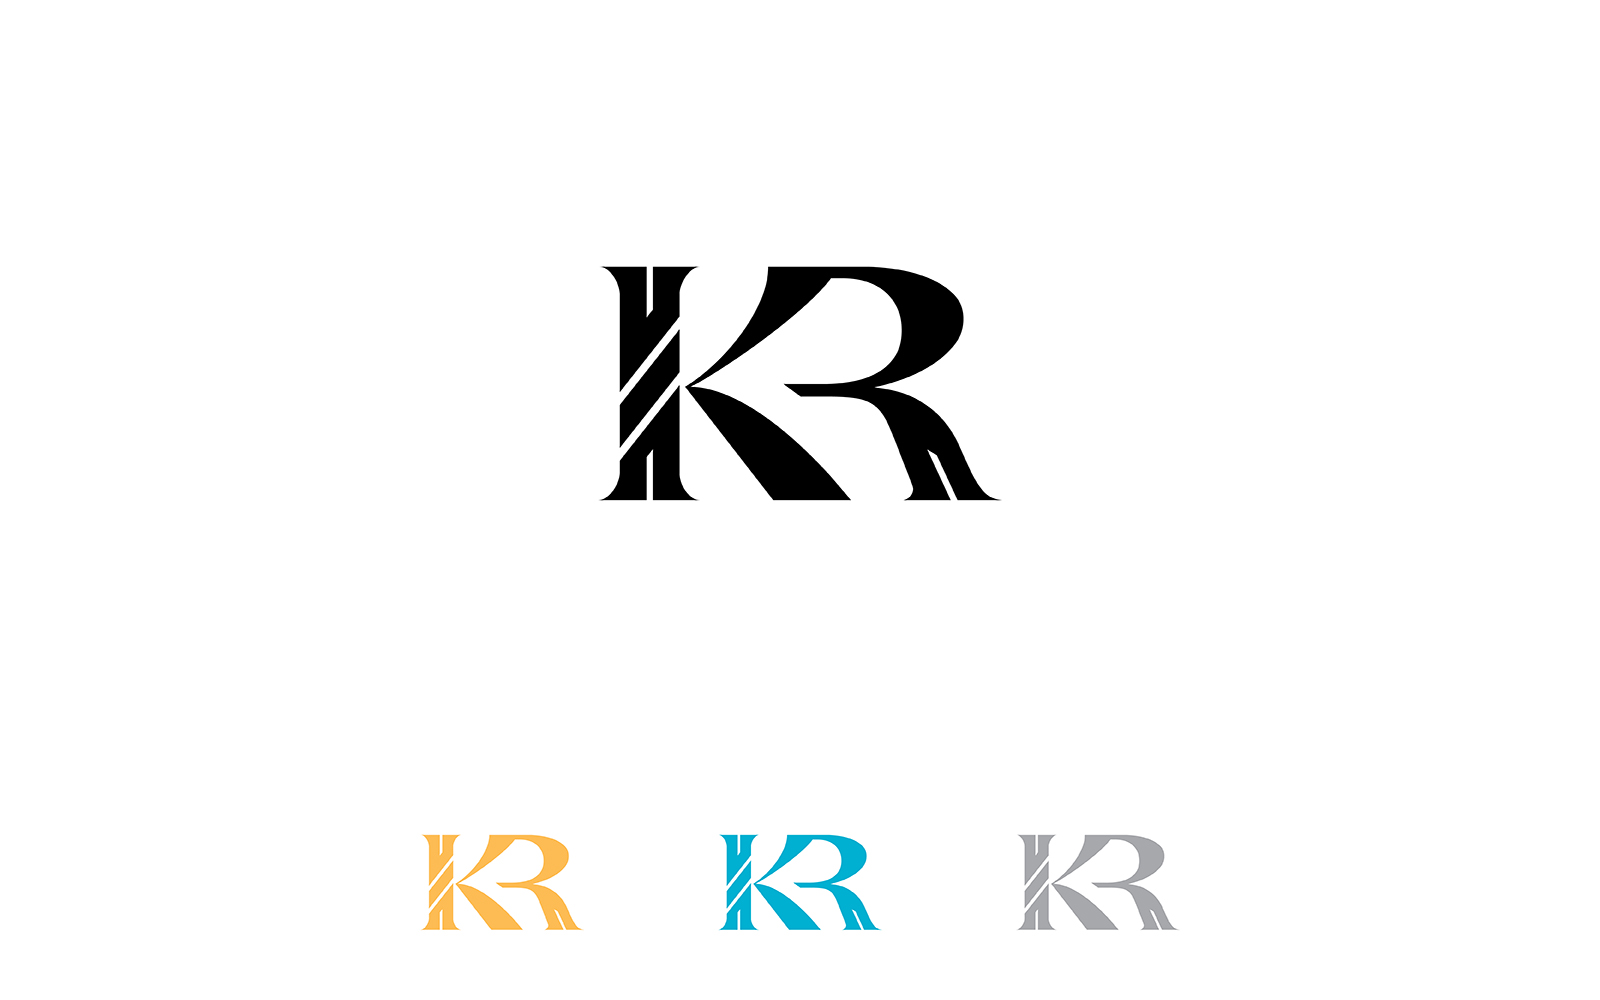 KR Monogram logo Design V6 By Vectorseller | TheHungryJPEG